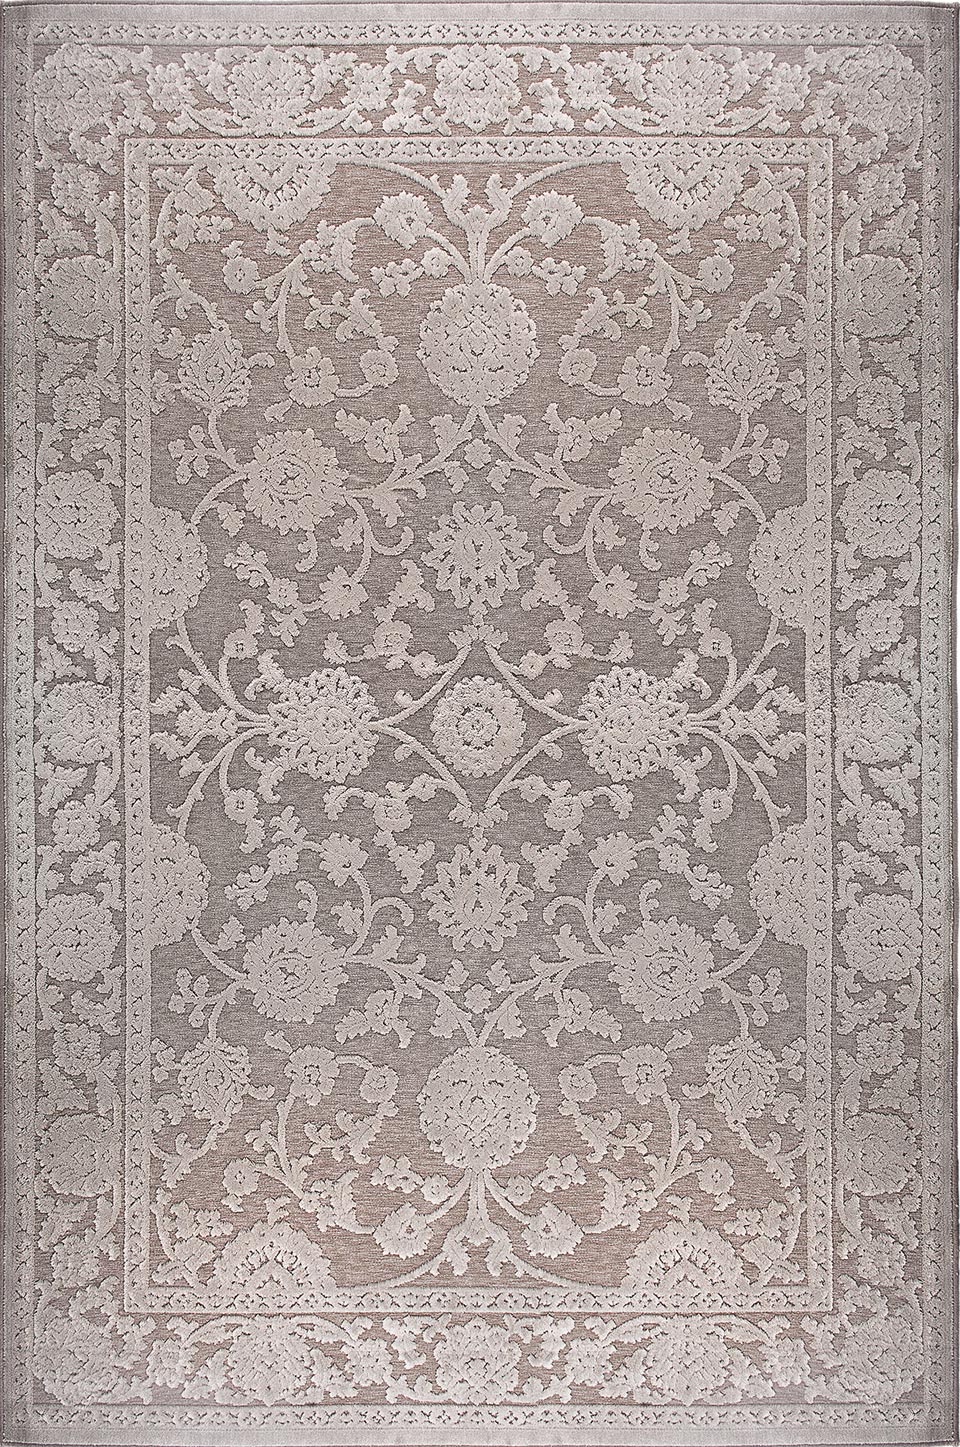 Scarpa tapis classique gris décor floral 100X140. MA Salgueiro. 